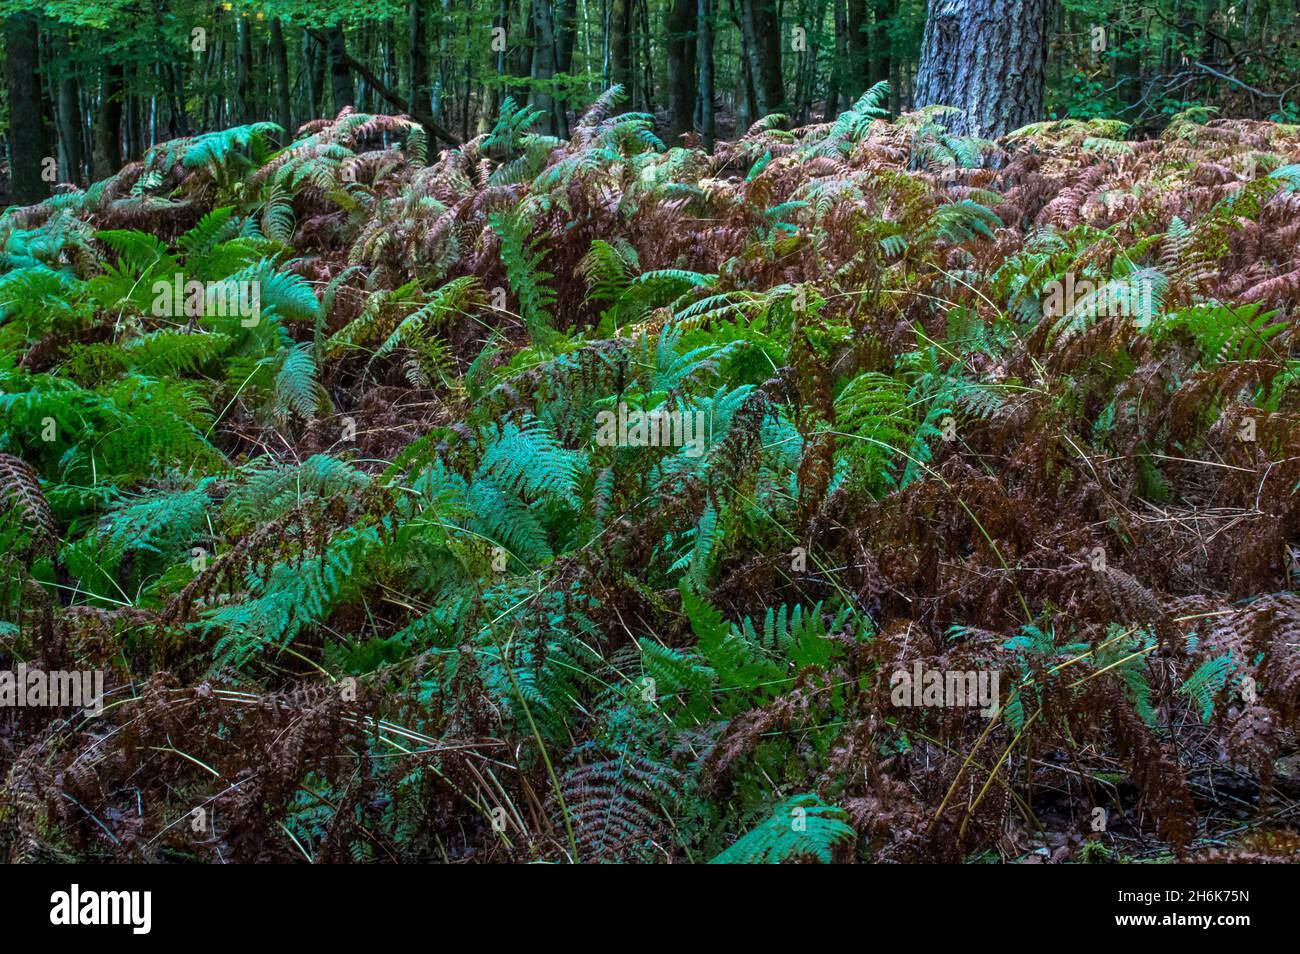 Waldspaziergang Bäume, Wurzeln, Blätter , Moos, Pilze und vieles mehr Foto Stock